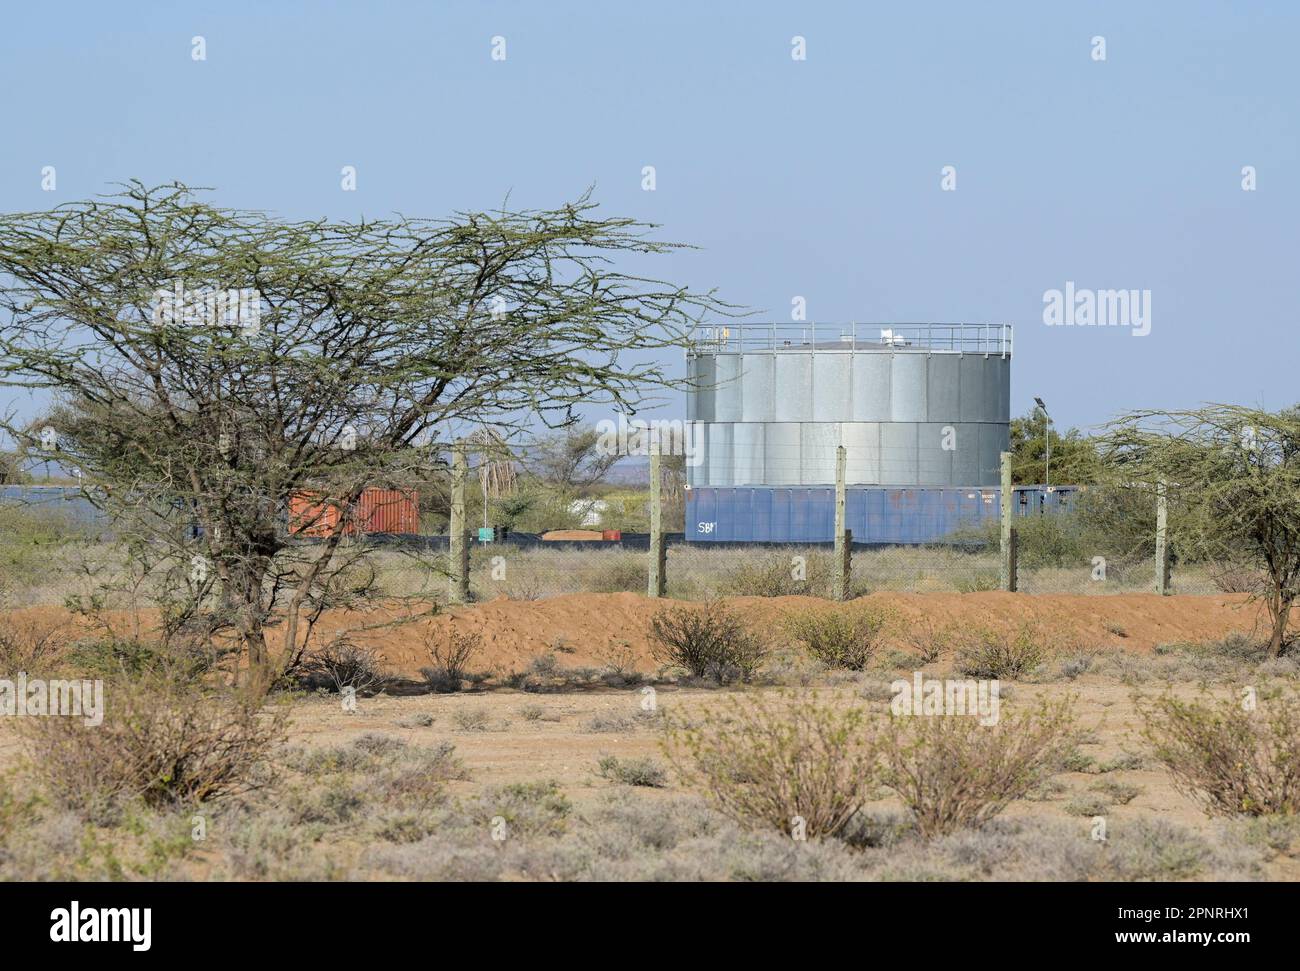 KENYA, Turkana, Lokichar, Tullow Oil Company, sito di esplorazione del greggio Ngamia 8, serbatoio di stoccaggio del petrolio Foto Stock